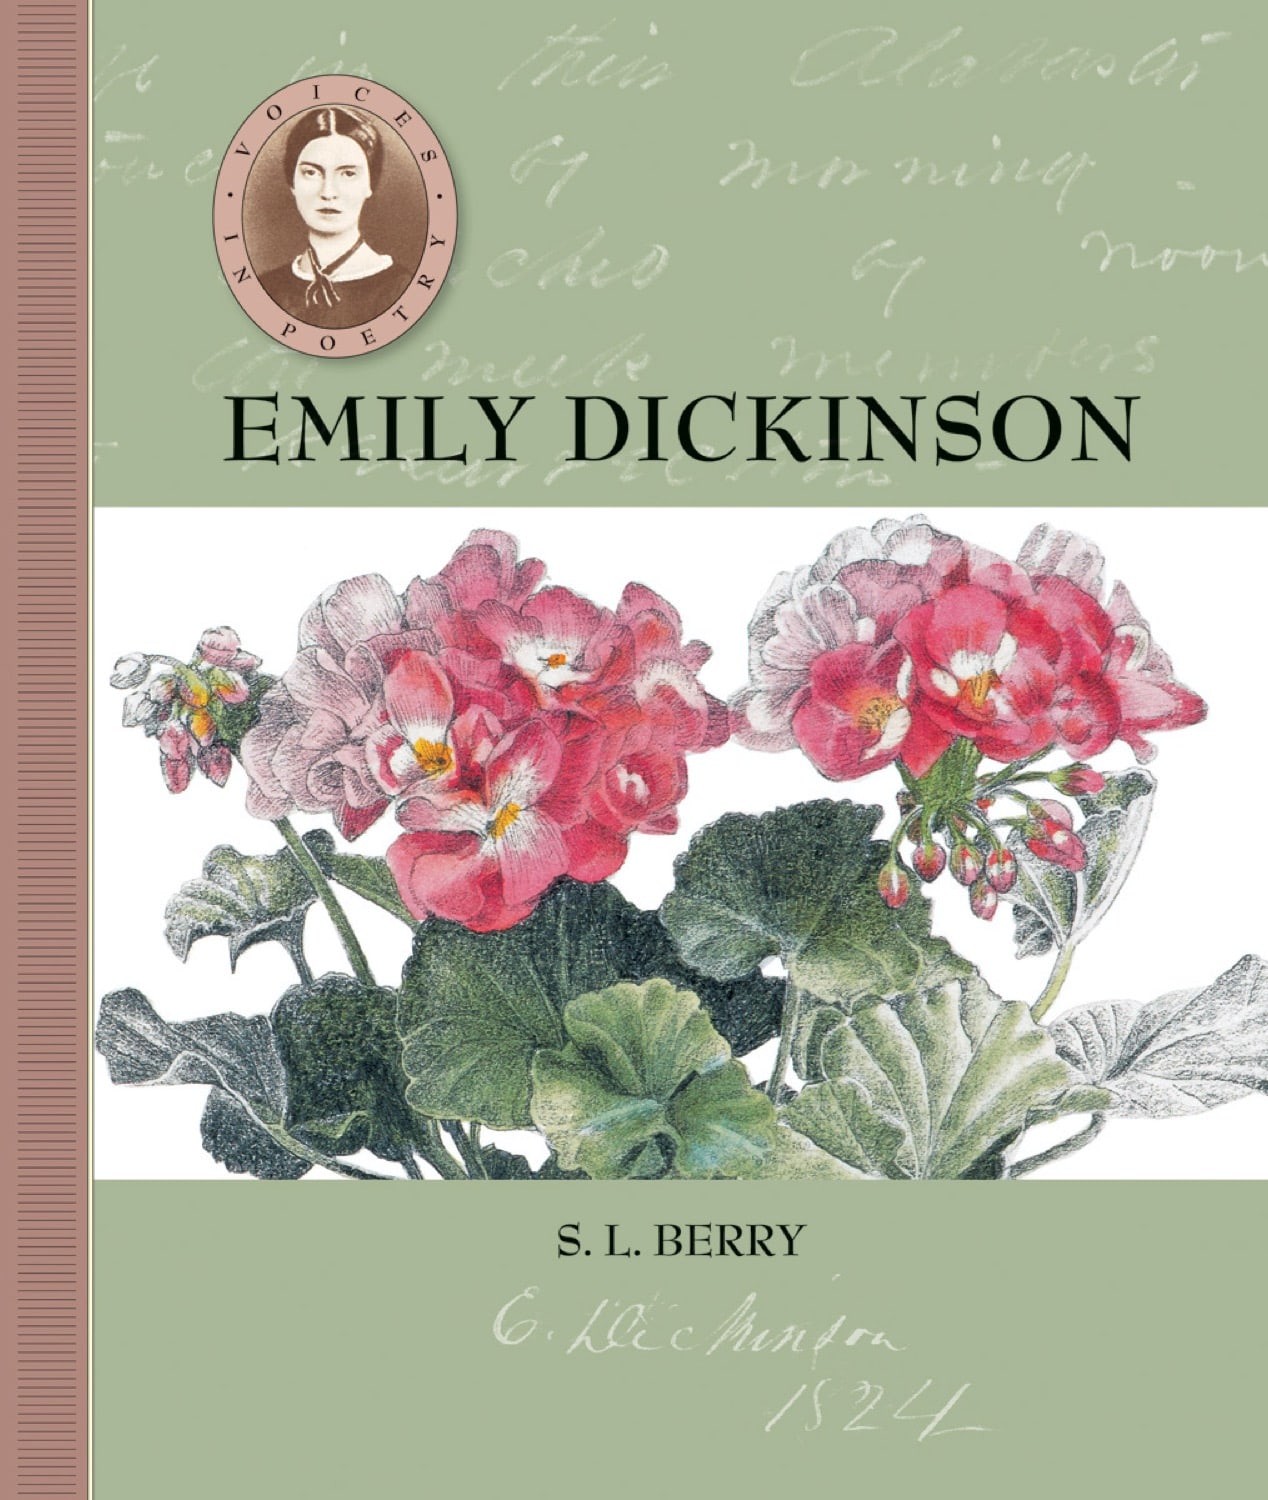 Stimmen in der Poesie: Emily Dickinson